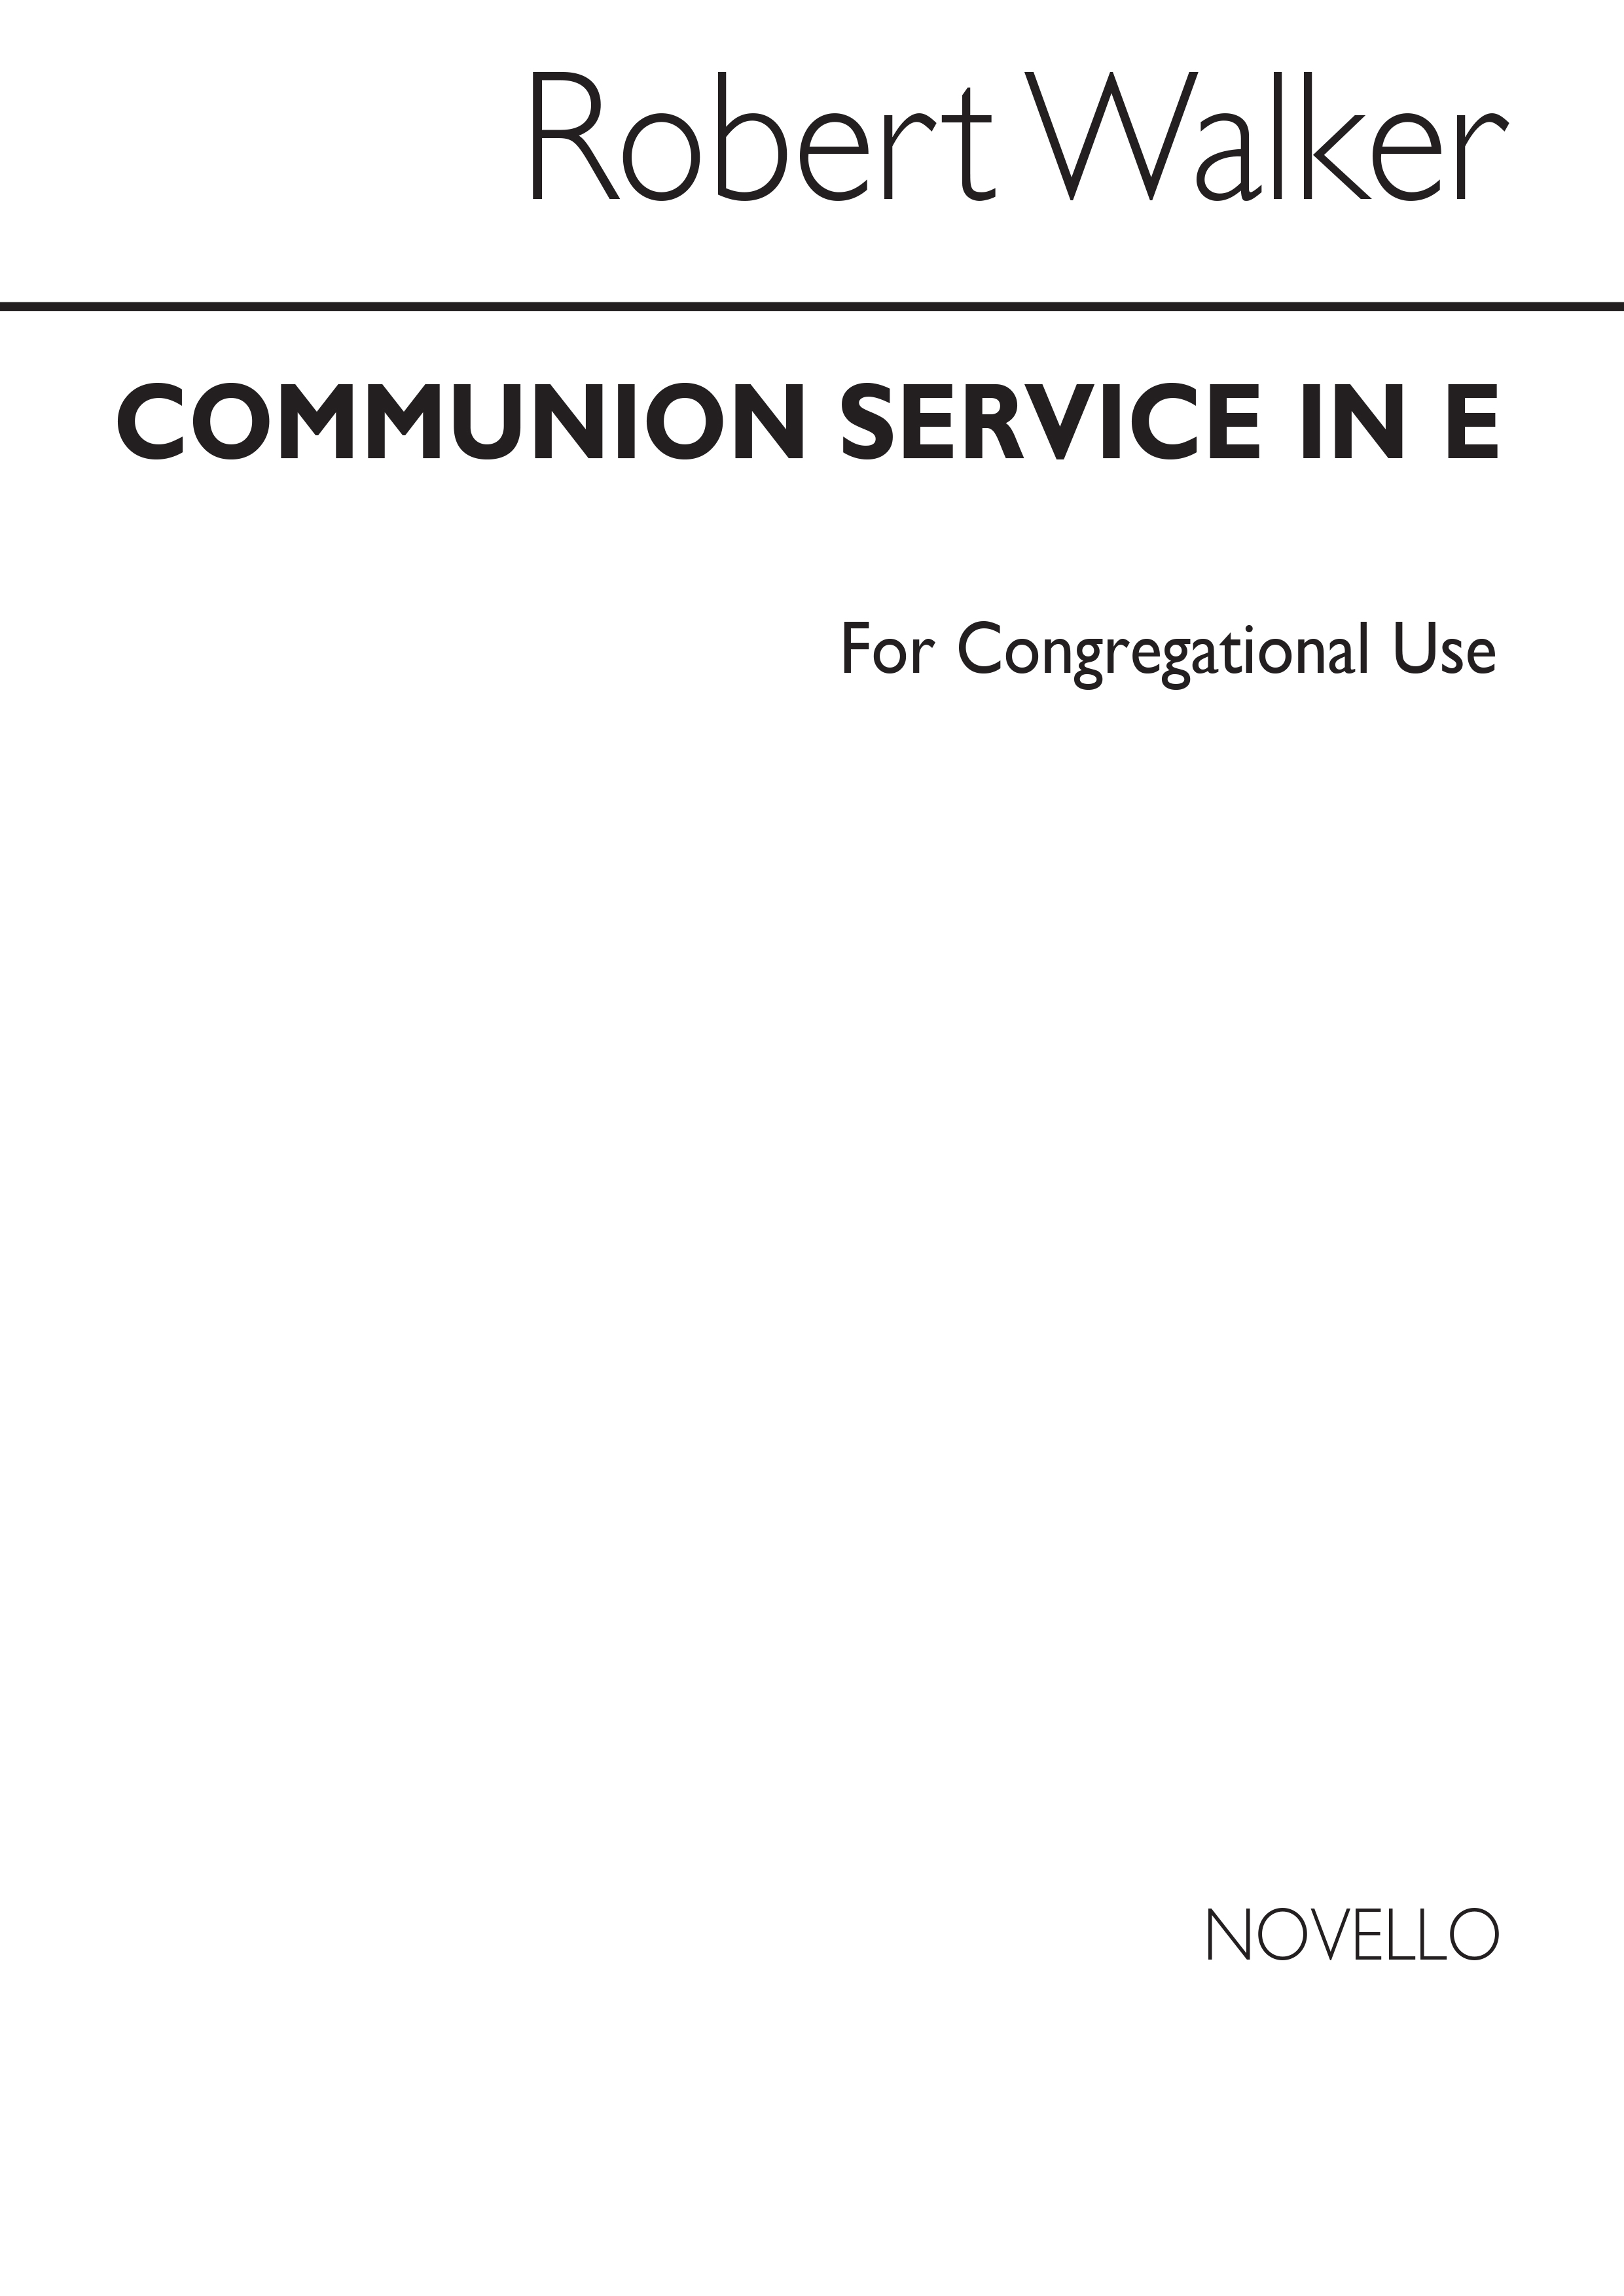 Robert Walker: Communion Service In E Series 3 (Unison Part): Unison Voices: